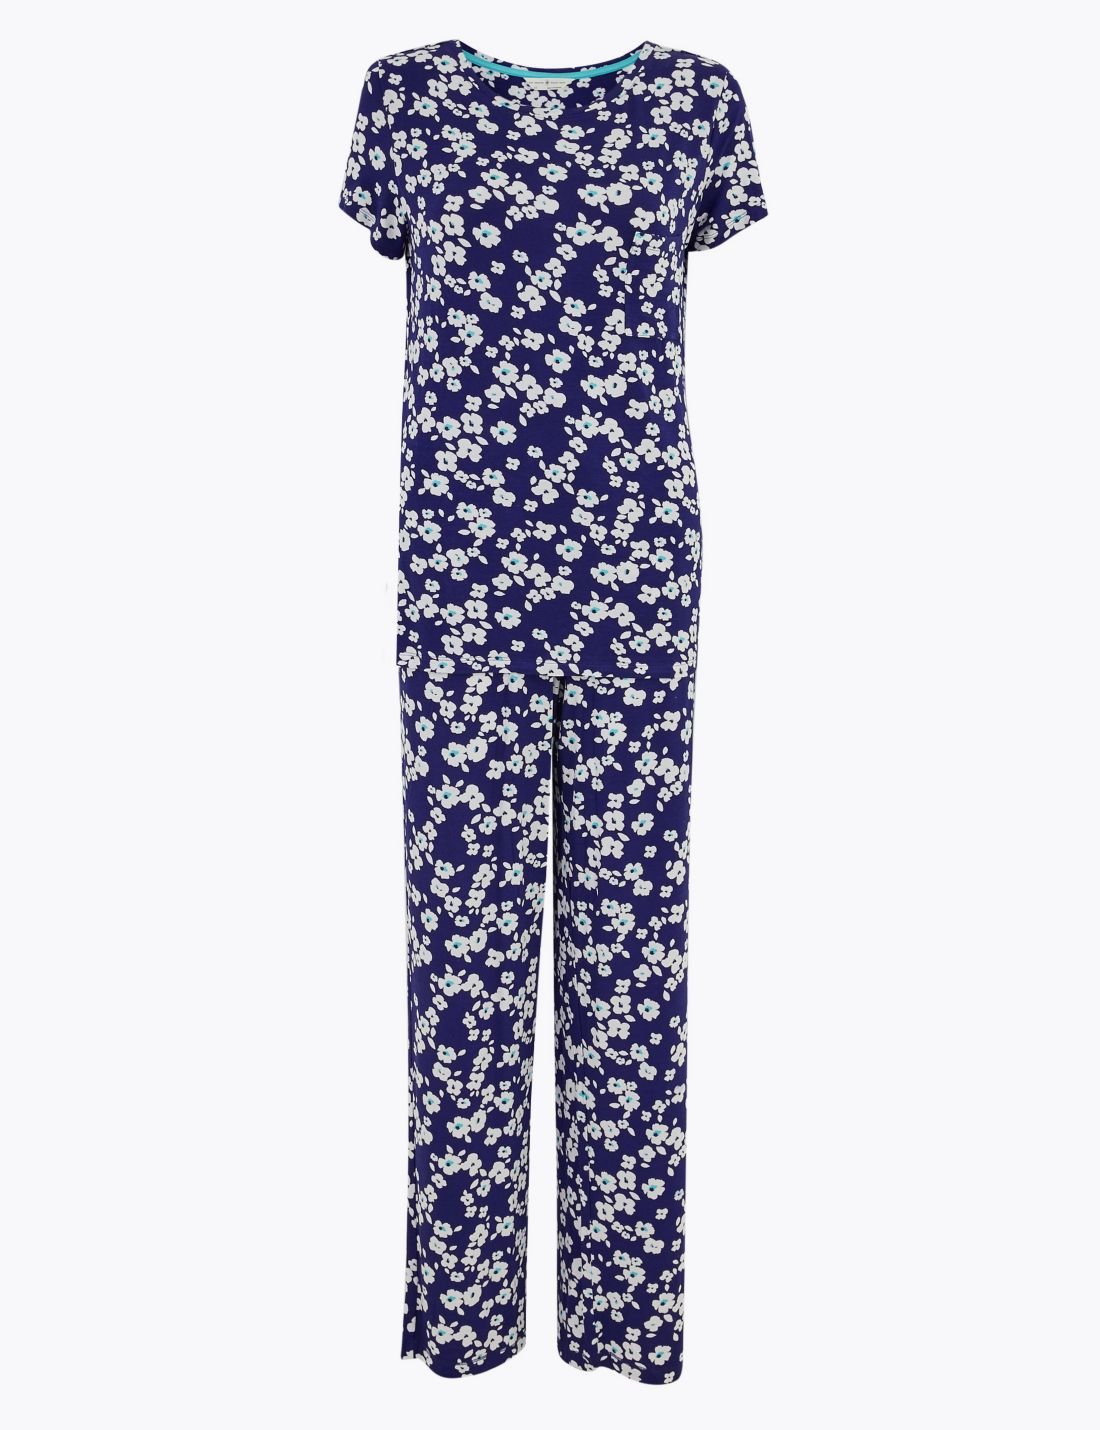 Çiçek Desenli Pijama Takımı